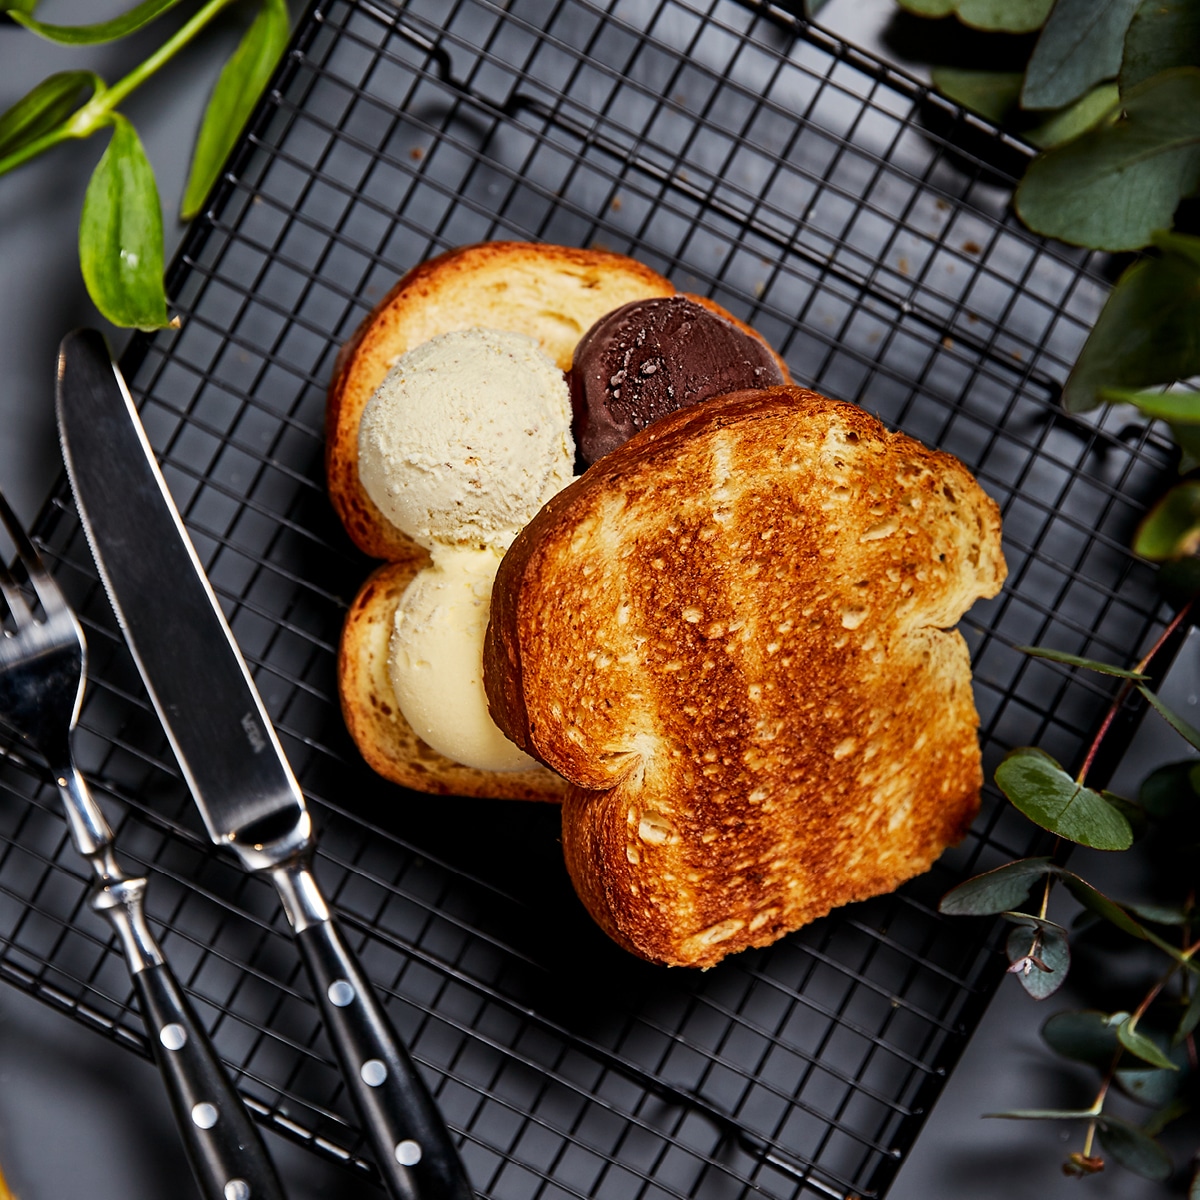 Gelateria-La-Romana-Toast-gelato-1 Antes que derreta com o calor, conheça as novidades destas 3 marcas de gelados